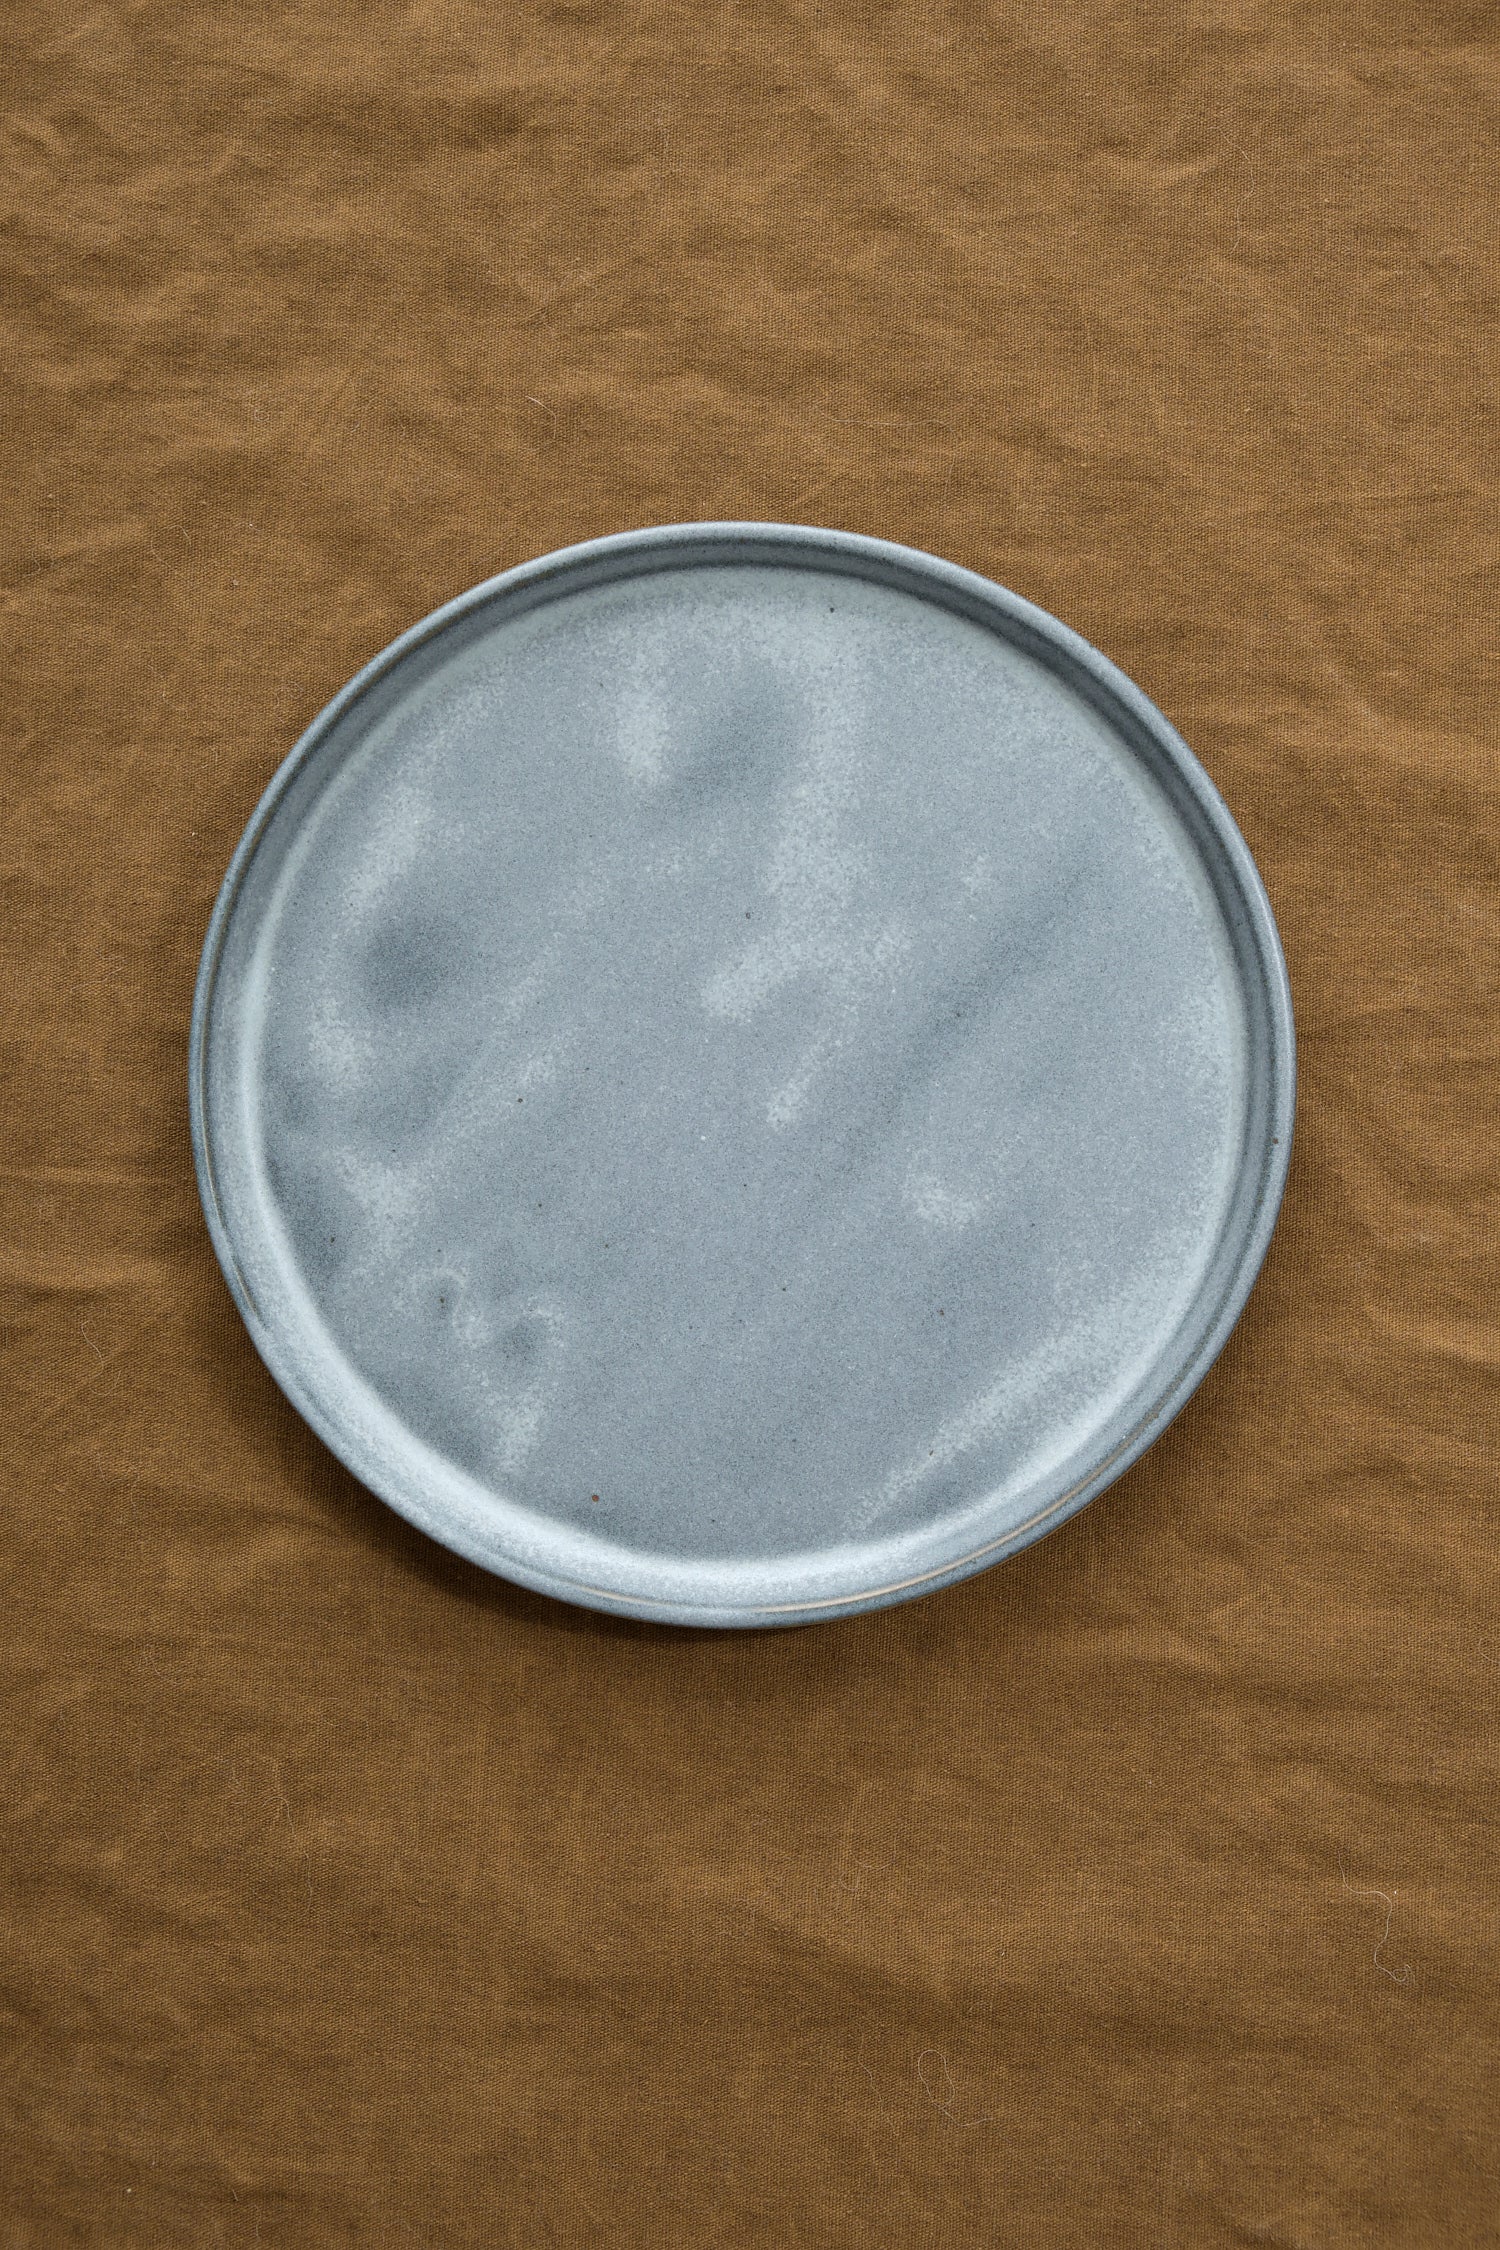 Medium Standard Plate in ash